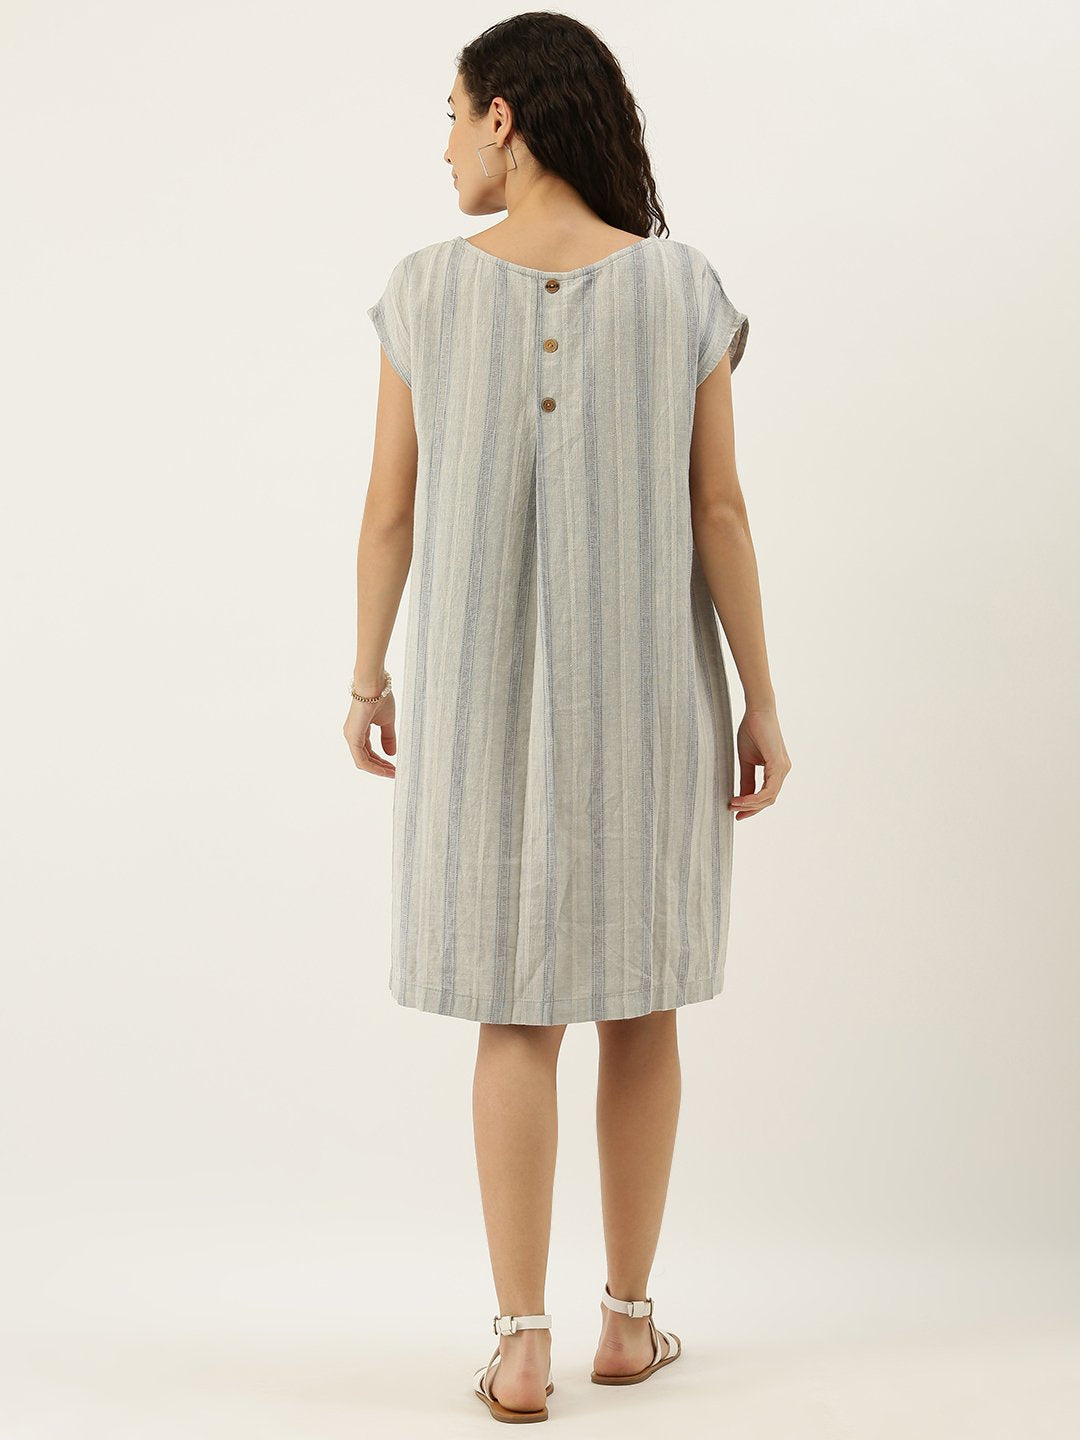 Buy Women Linen Drop Shoulder Shift Dress Online in India - The Meraki ...